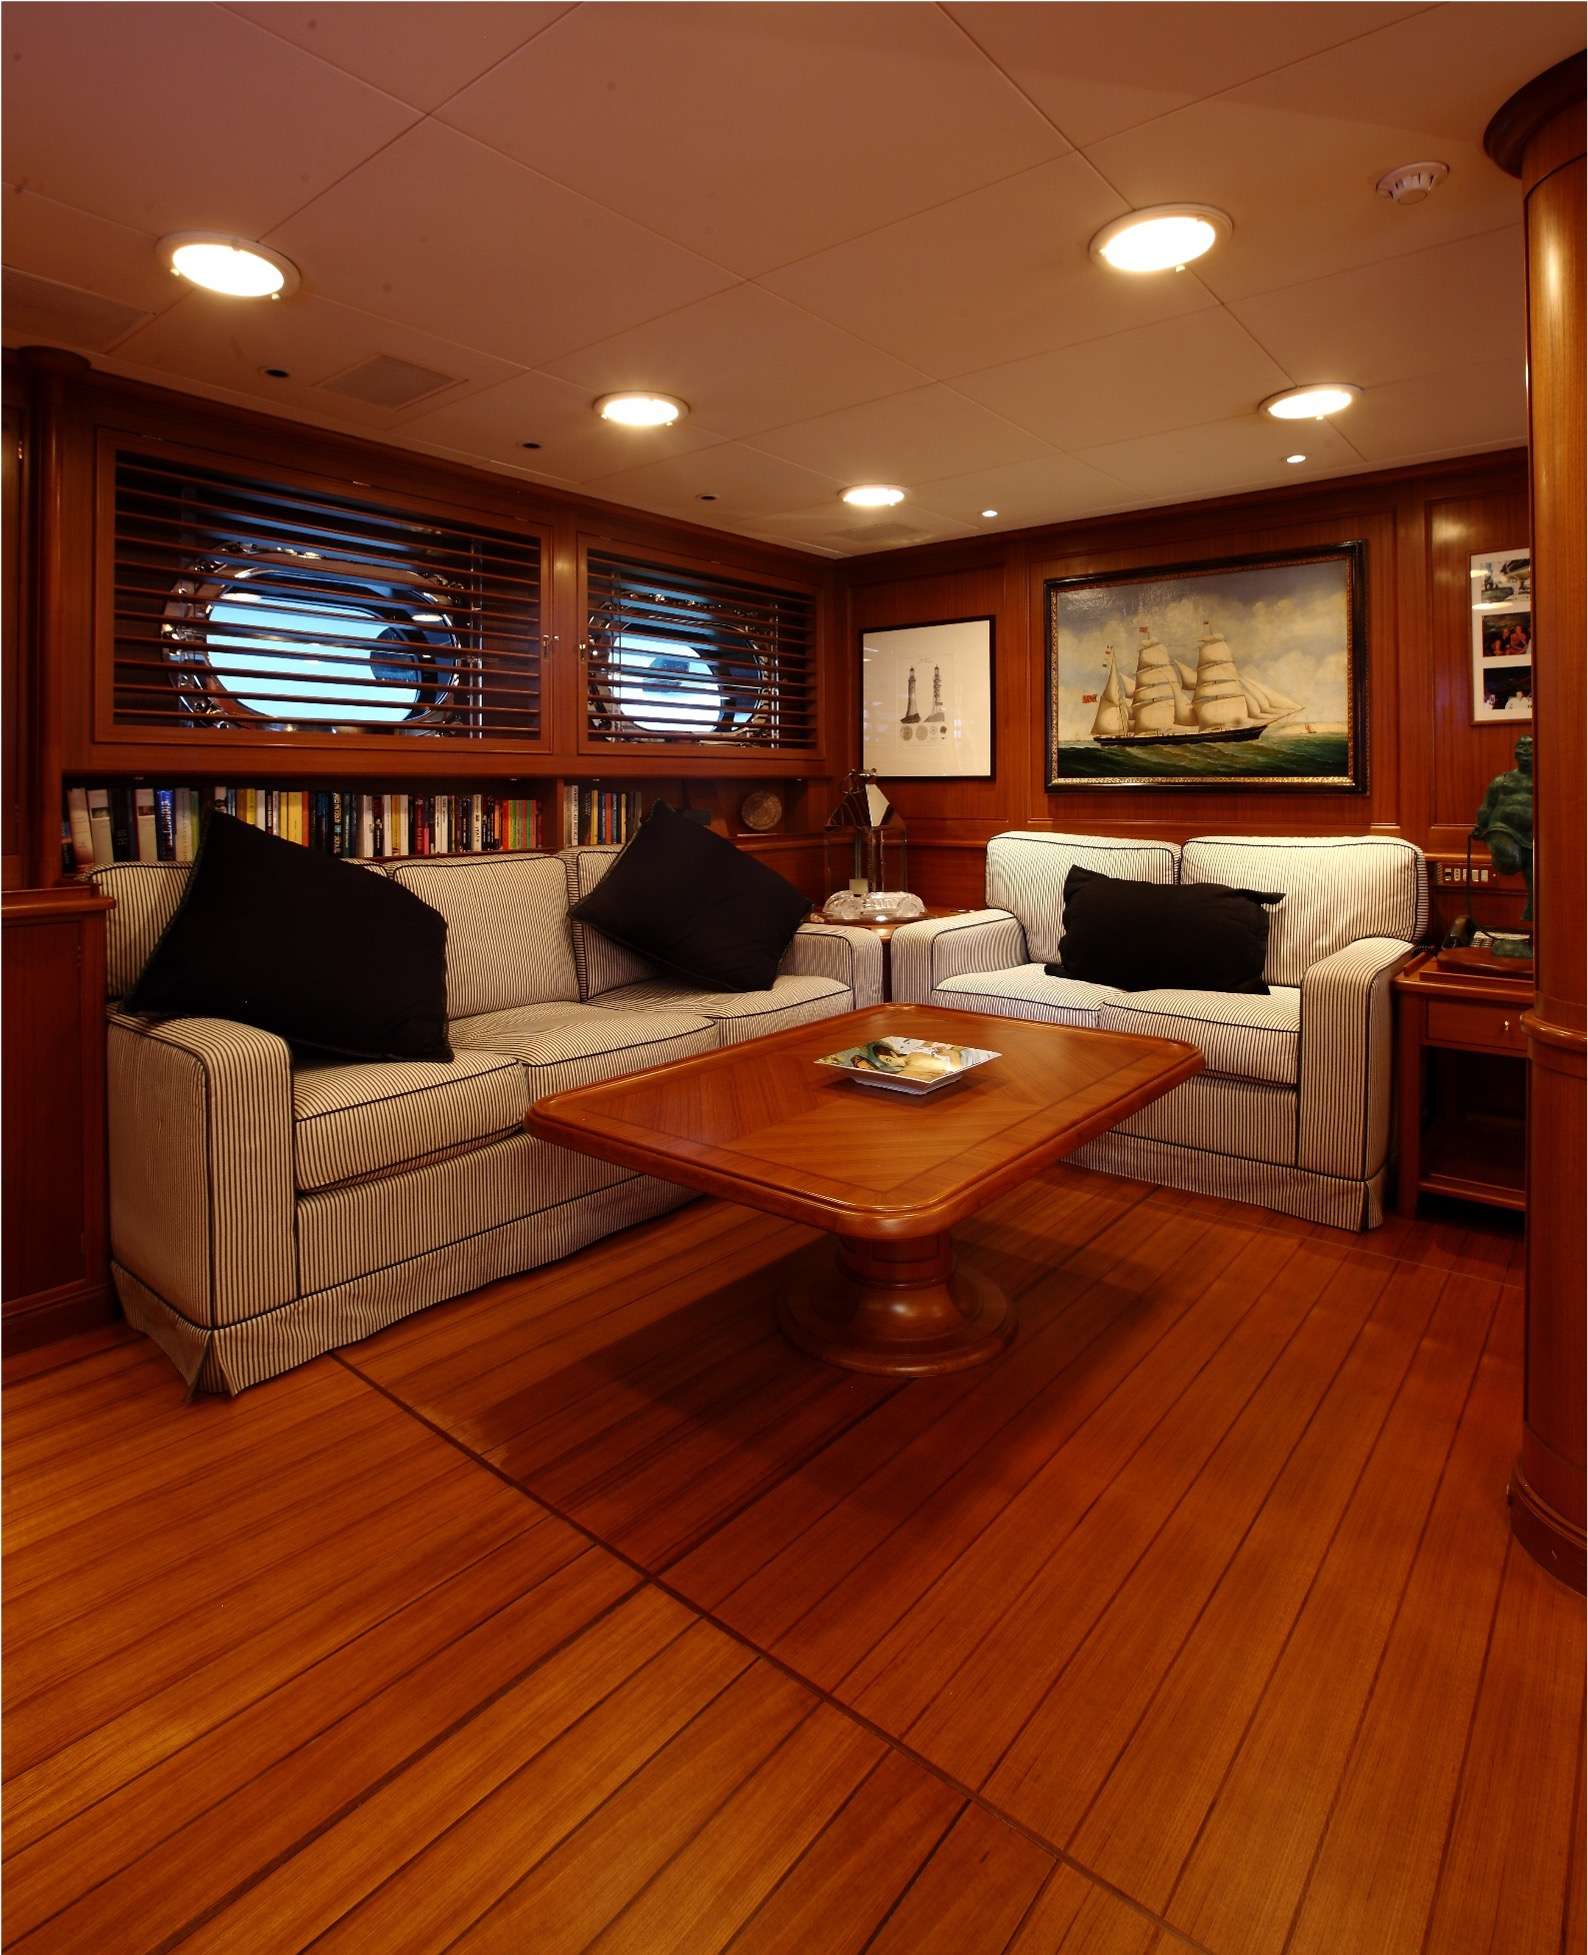 HERITAGE M - Luxury yacht charter France & Boat hire in Fr. Riviera & Tyrrhenian Sea 2